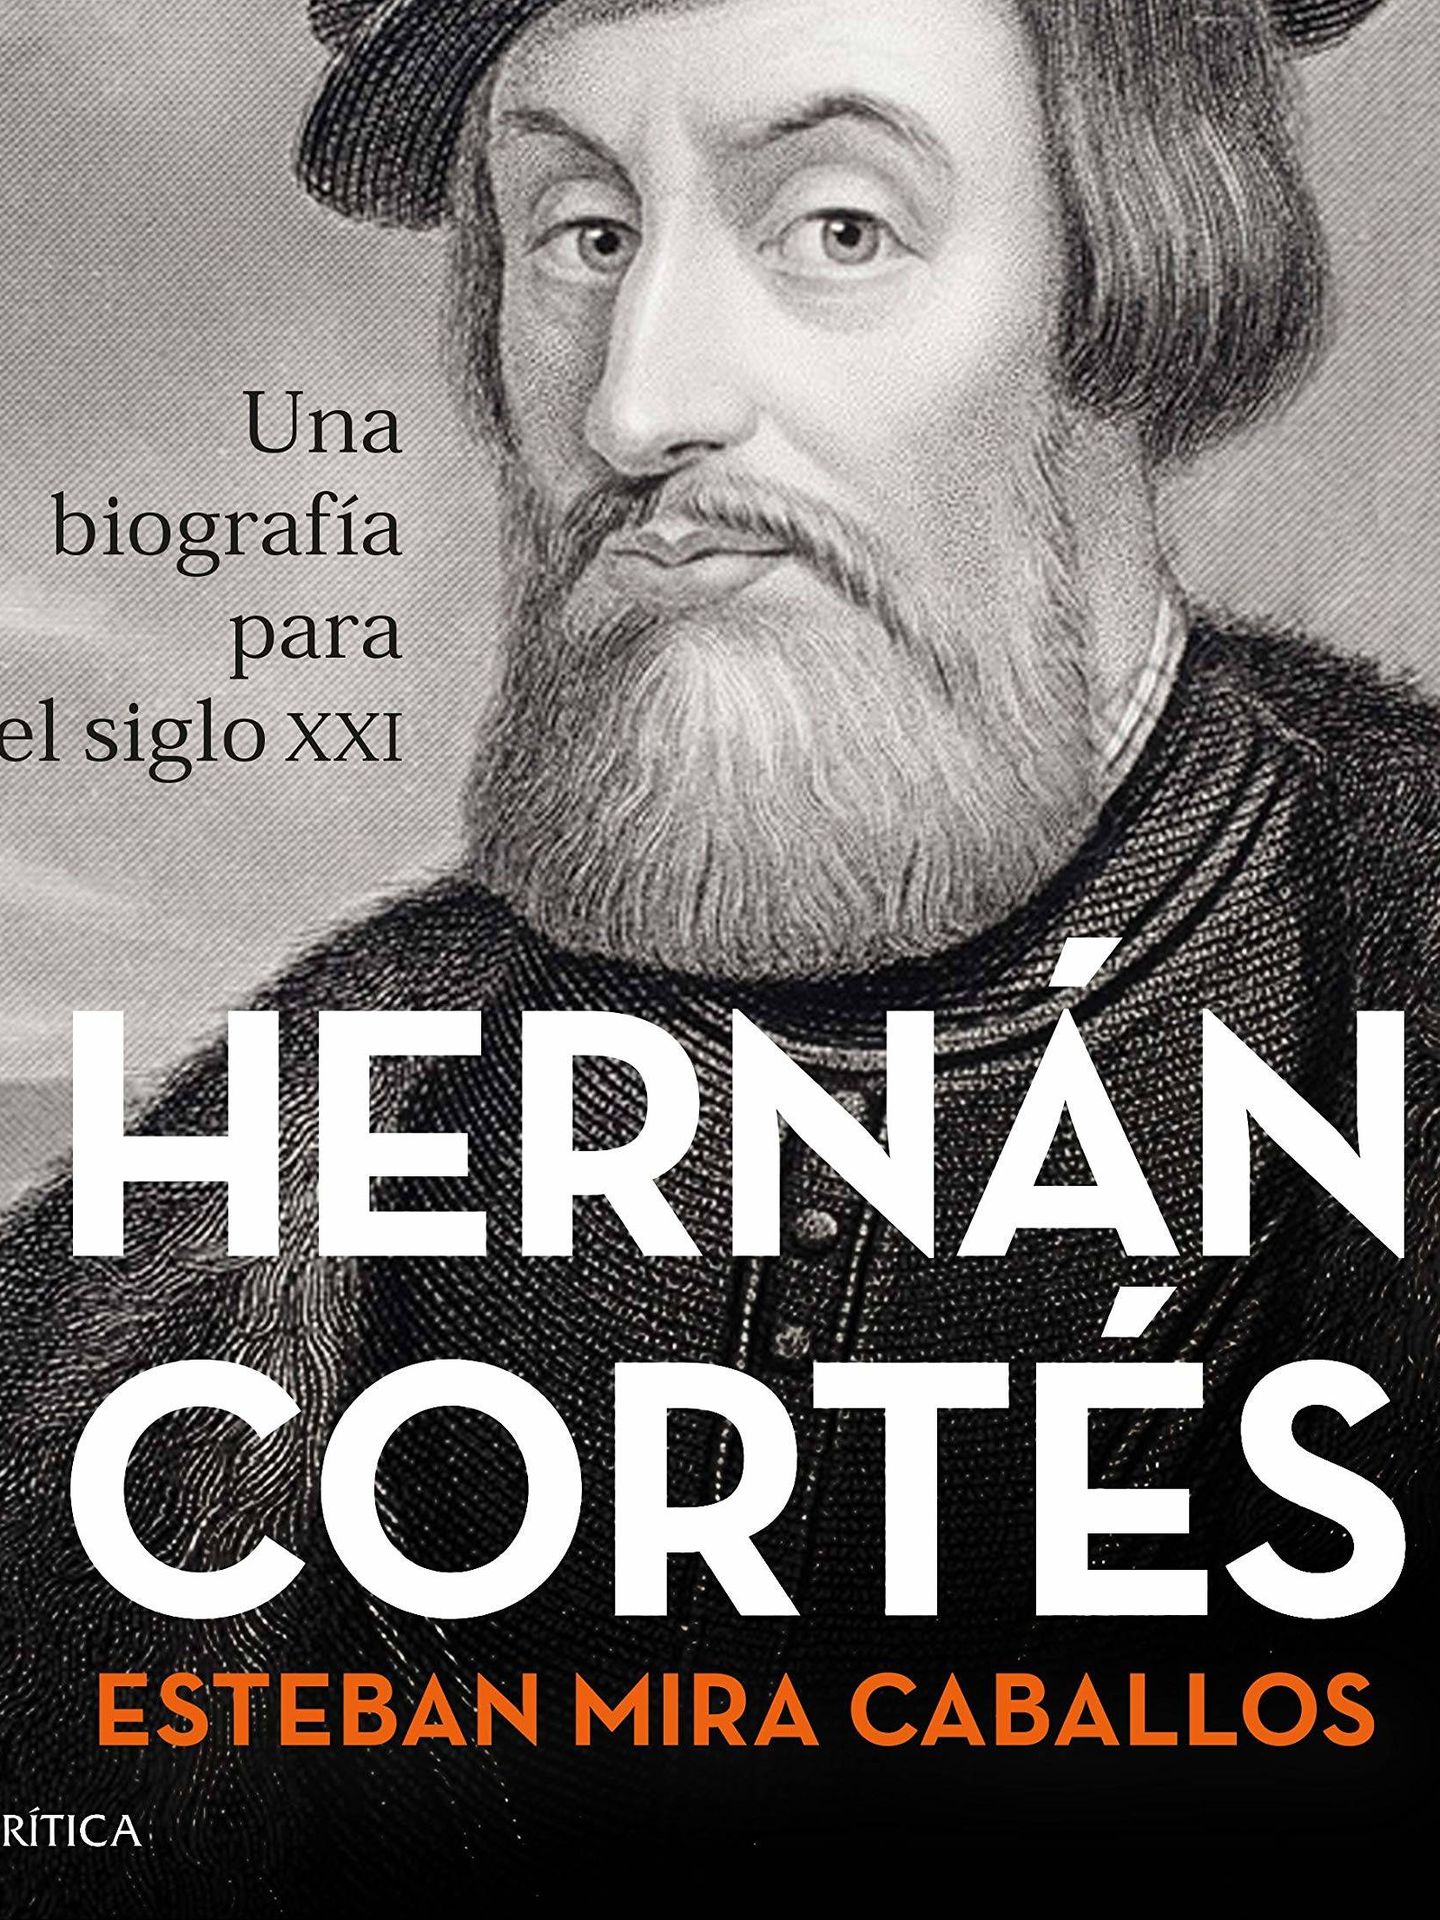 'Hernán Cortés' (Crítica)